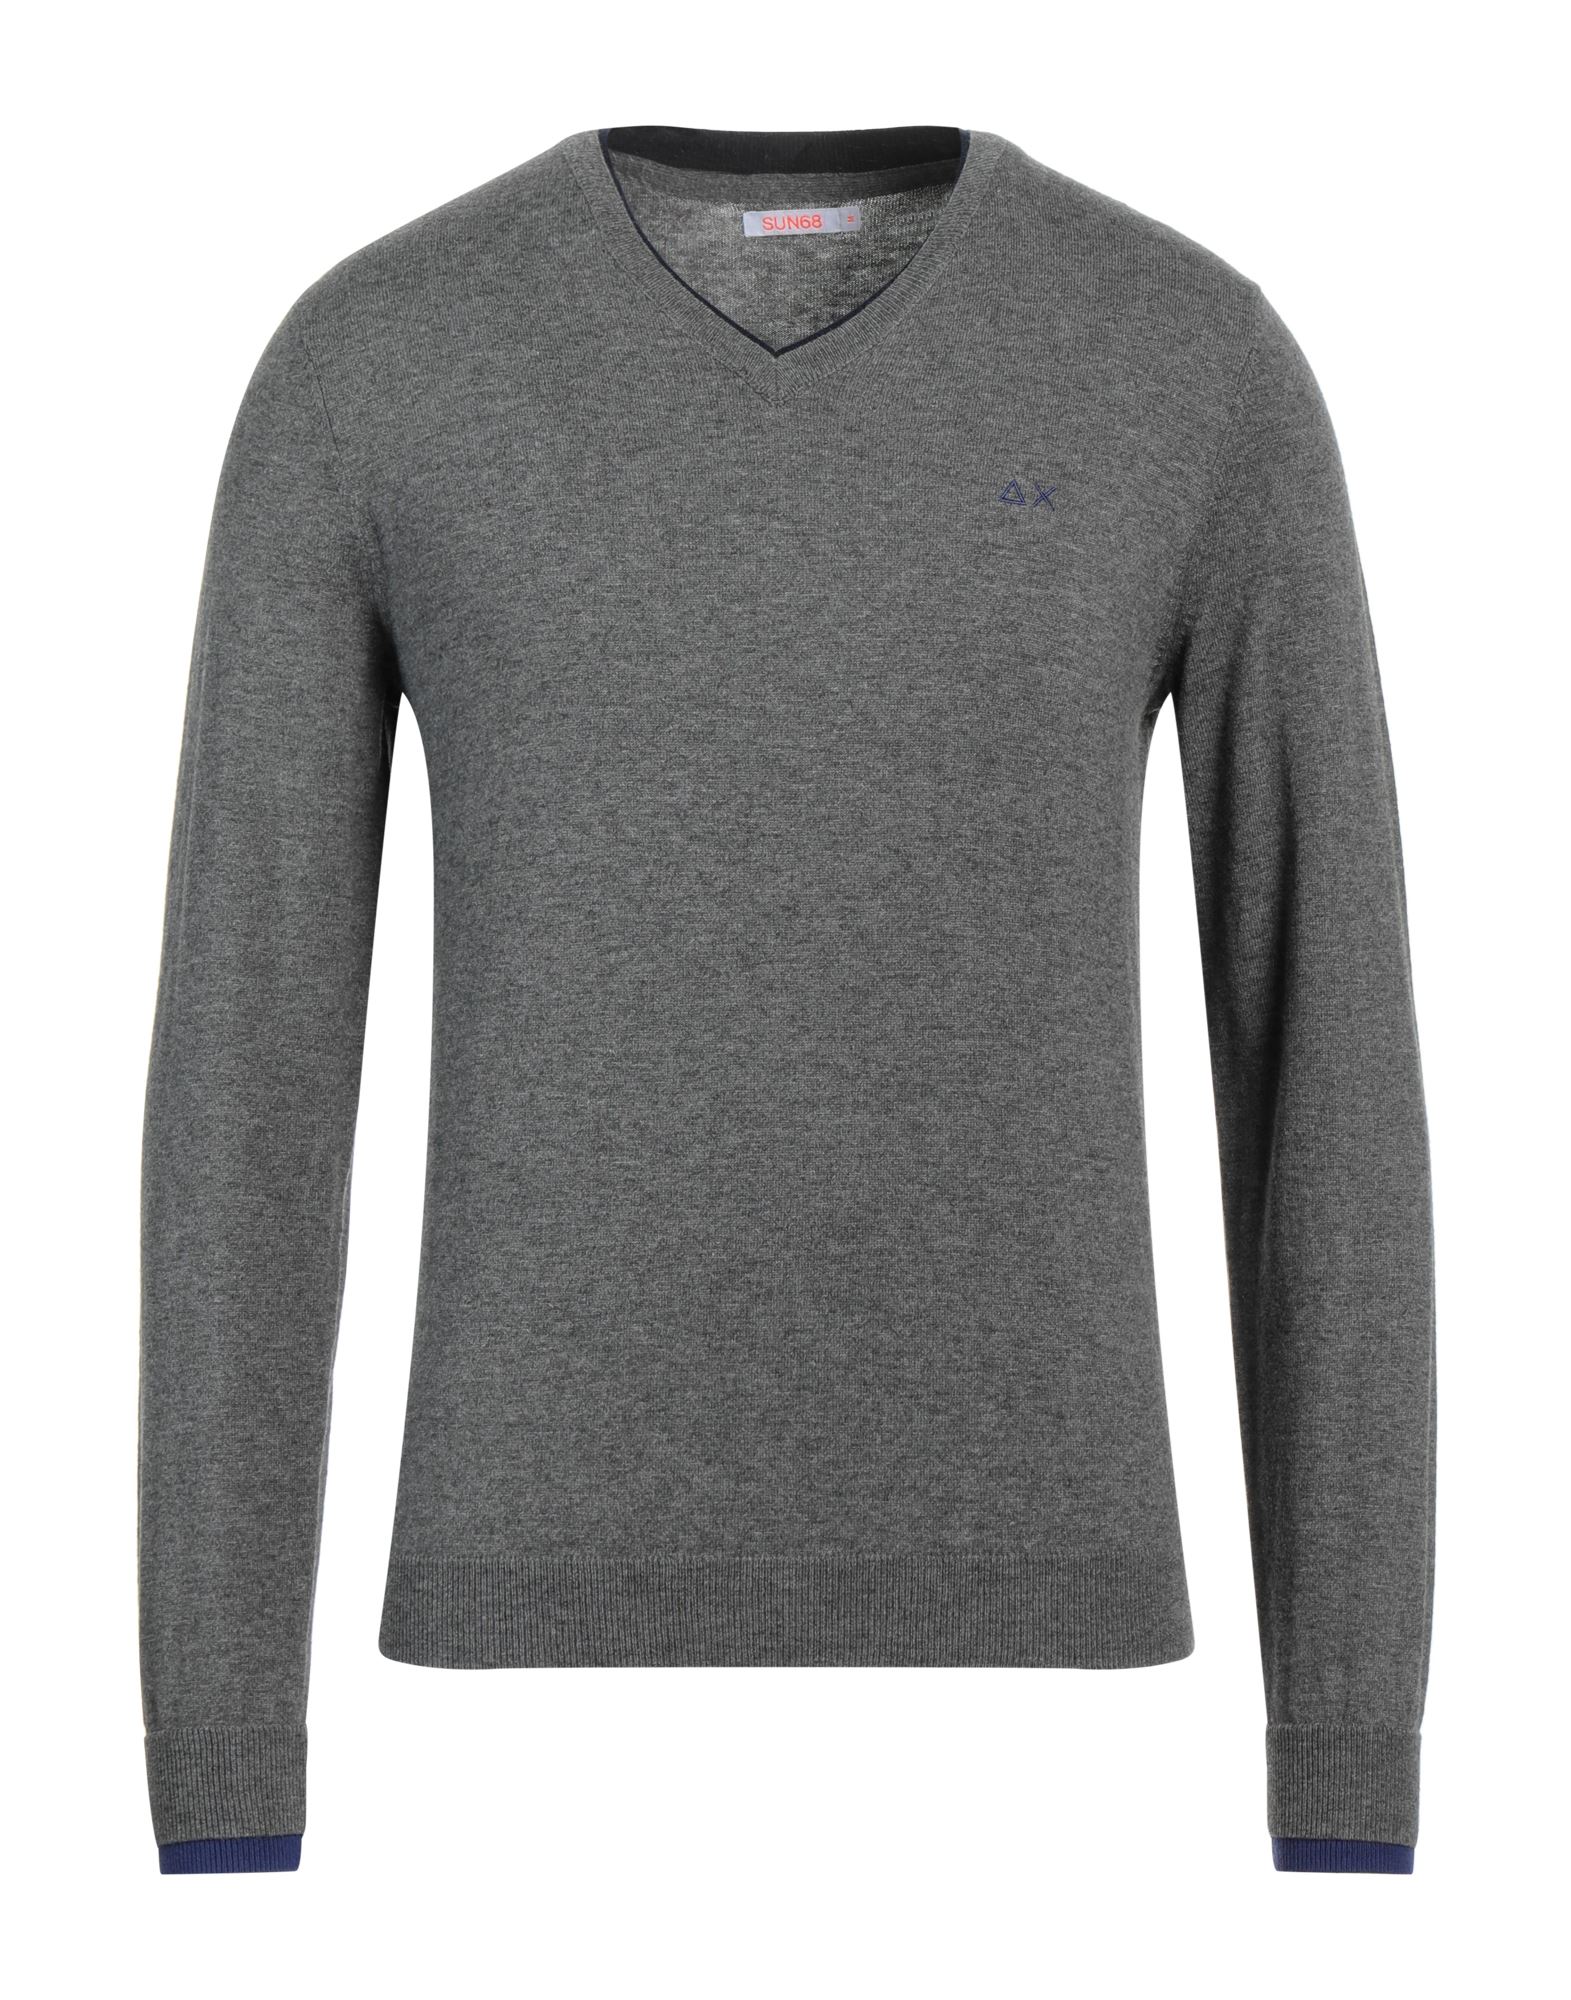 Sun 68 Sweaters In Grey | ModeSens